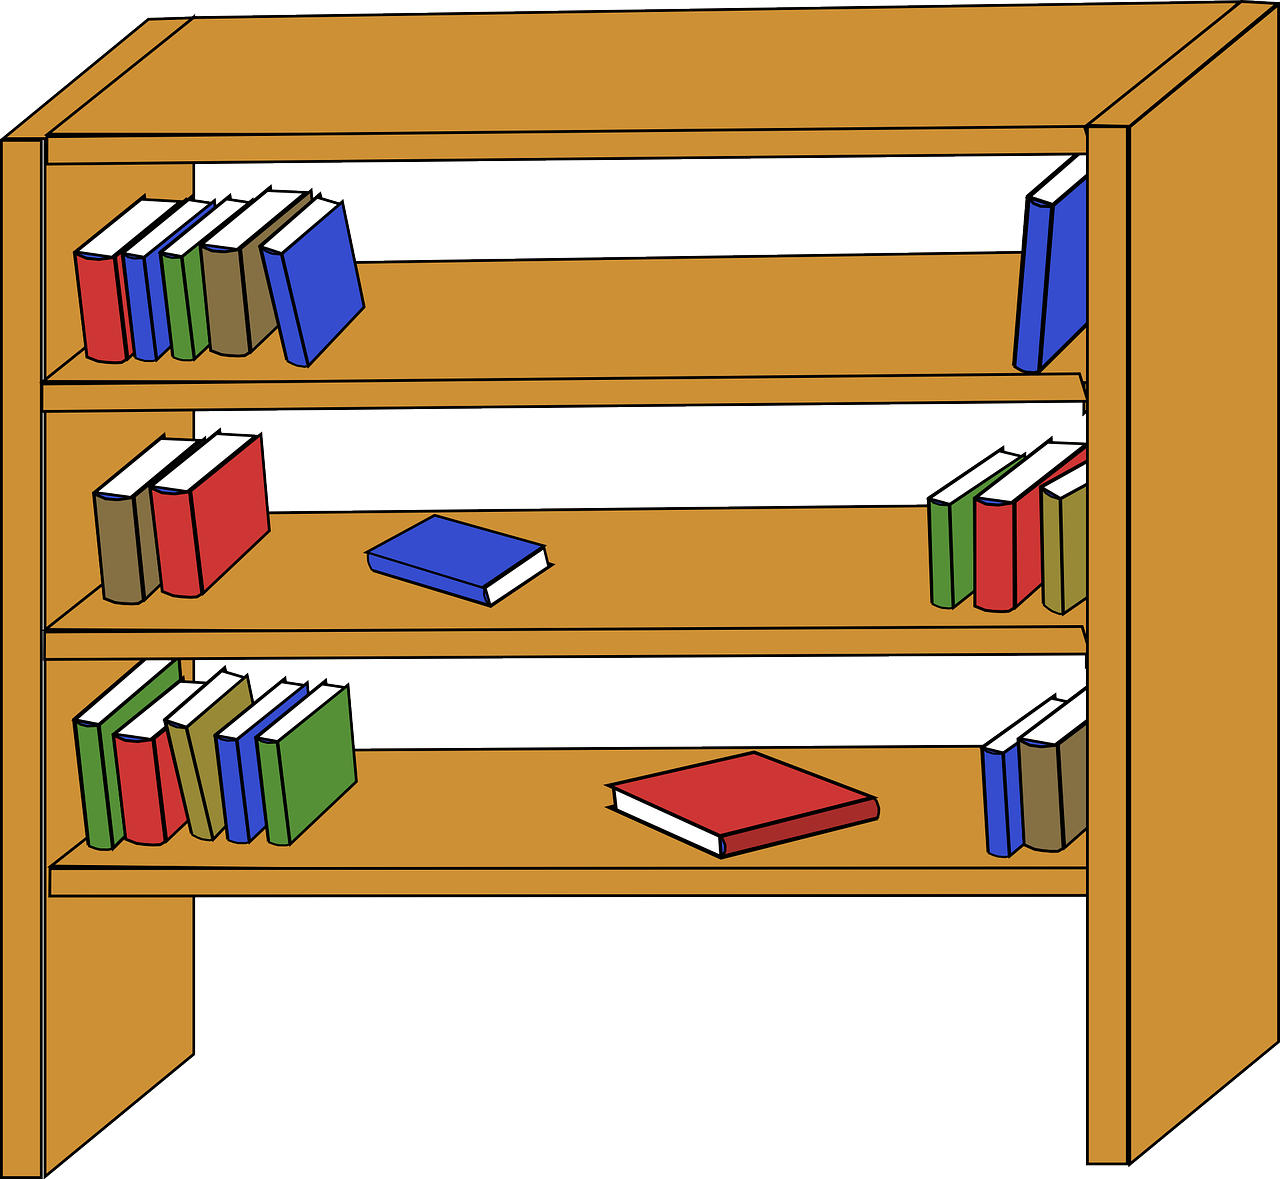 Auf dem Bild ist ein Bücherregal zu sehen